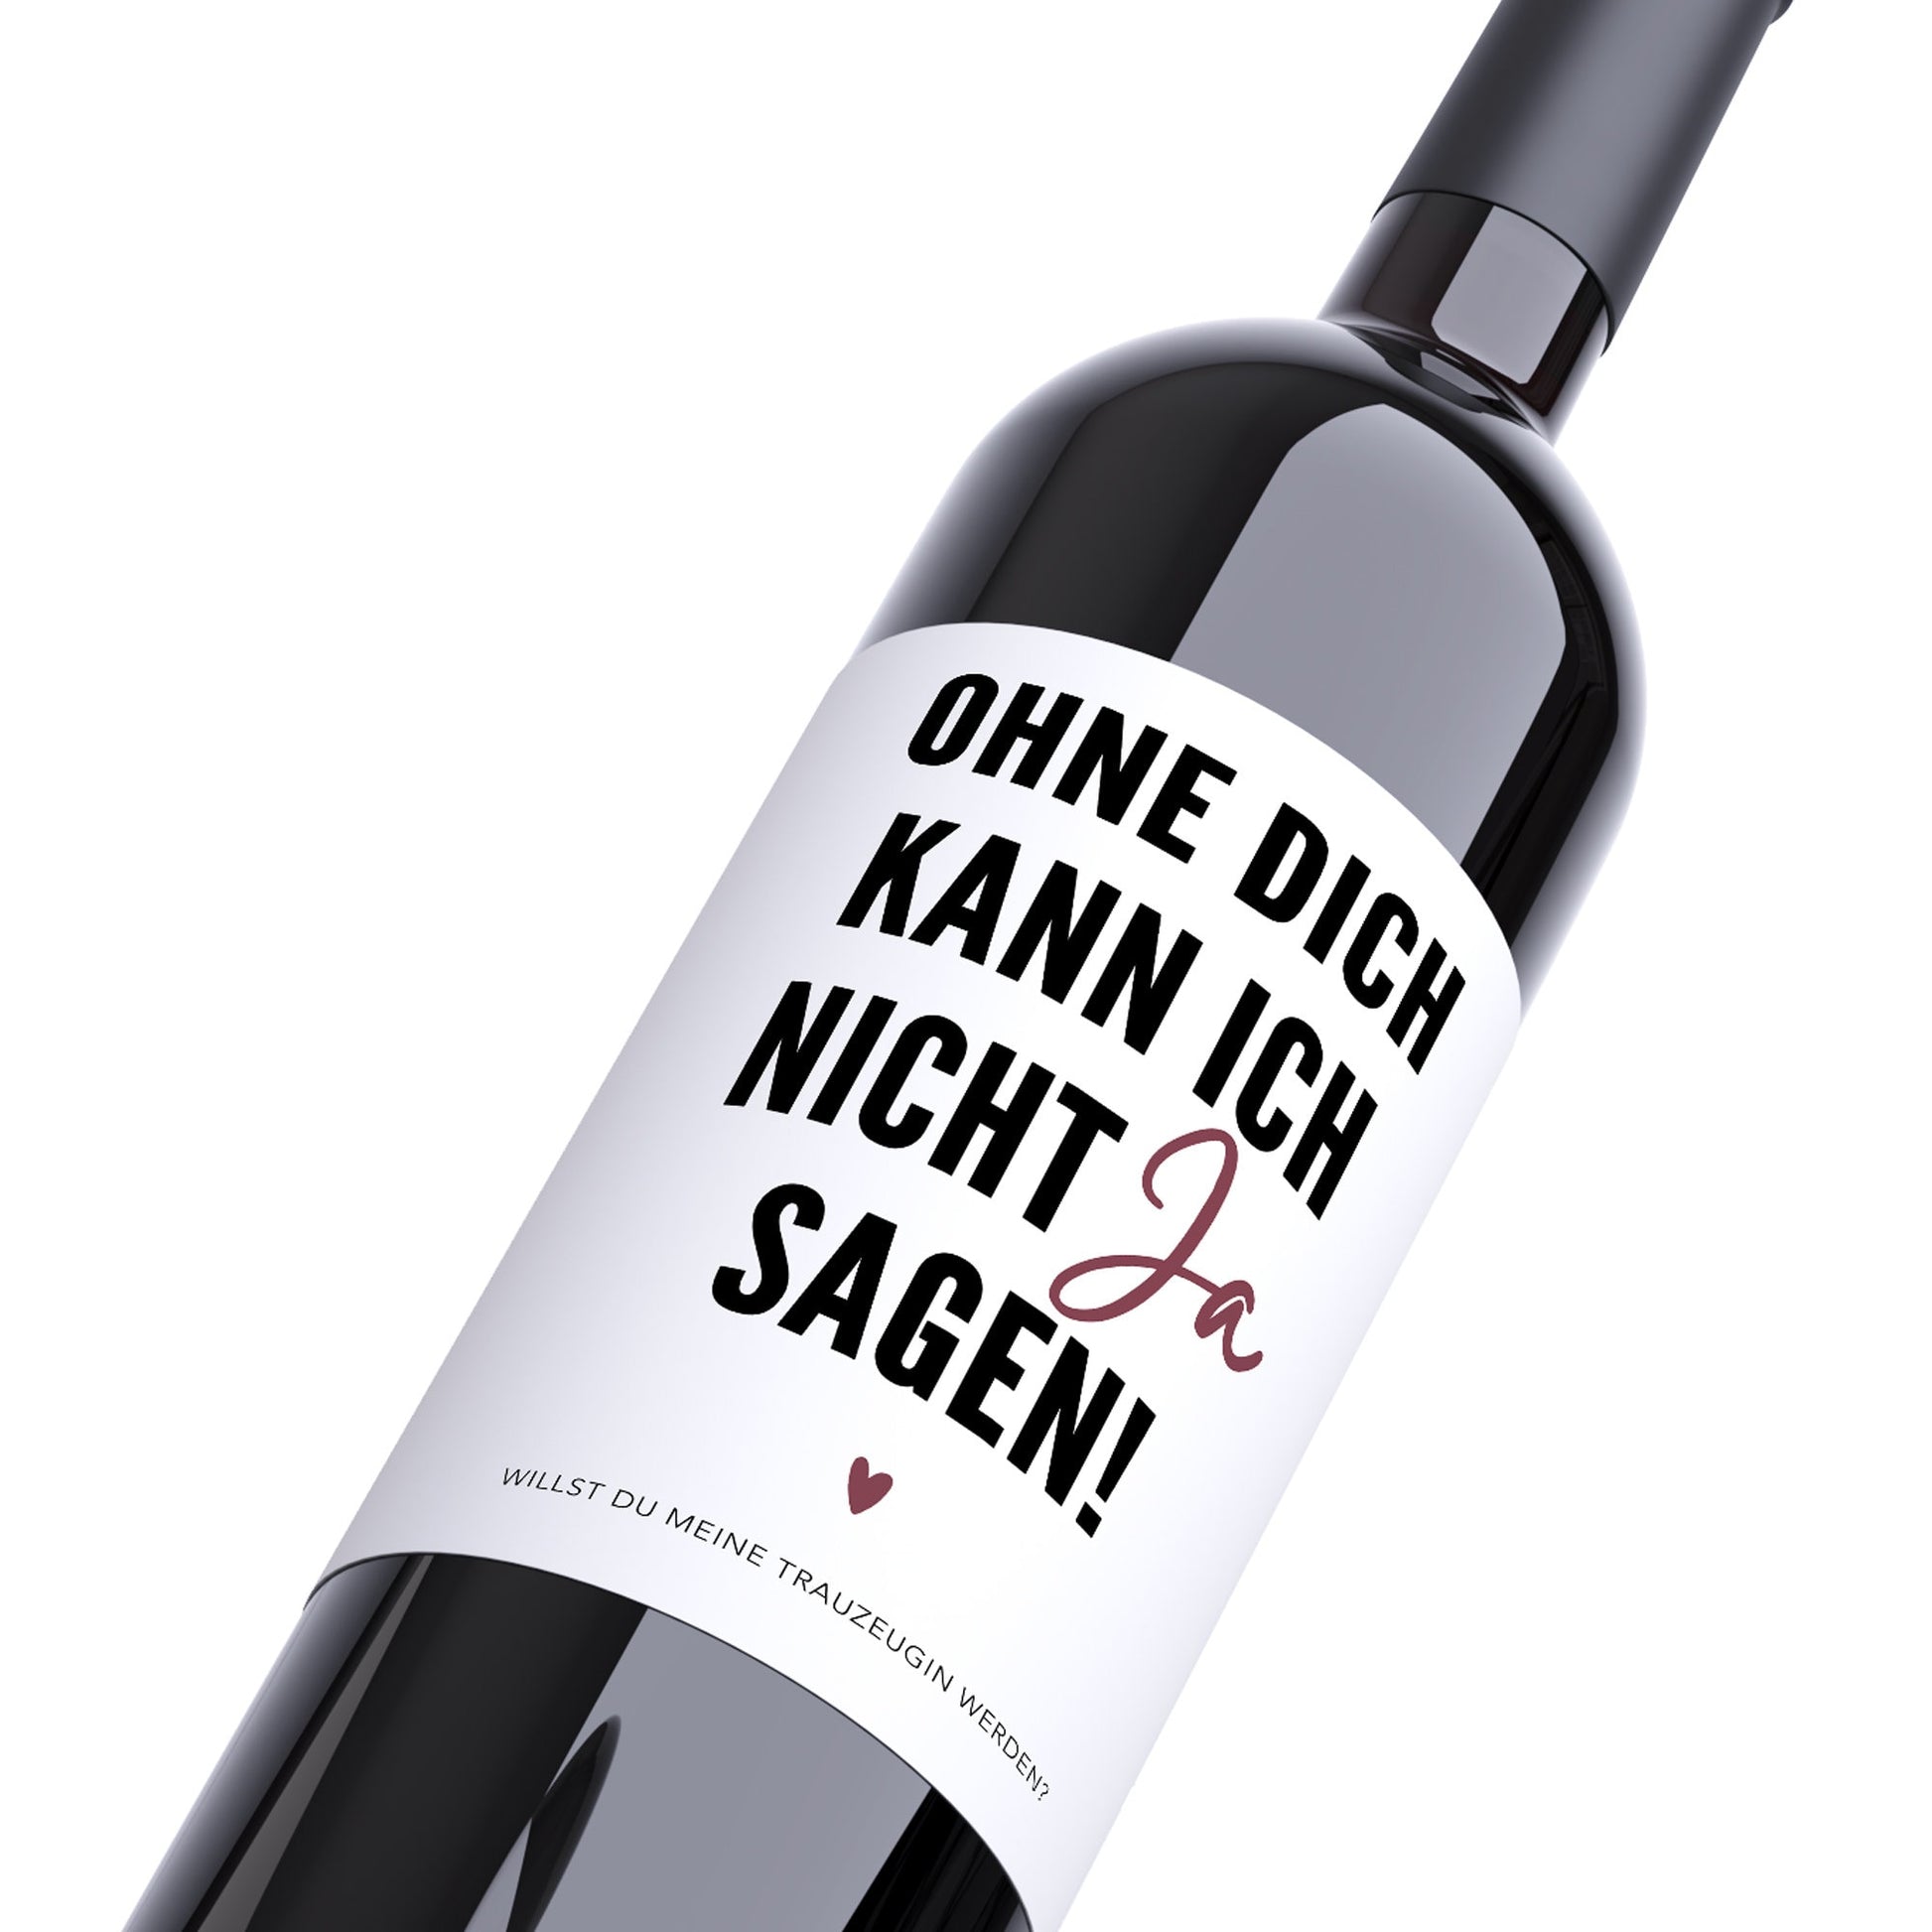 Trazeugin Fragen Wein Flaschen Etikett Geschenk Freundin Flaschenetikett Trauzeuge